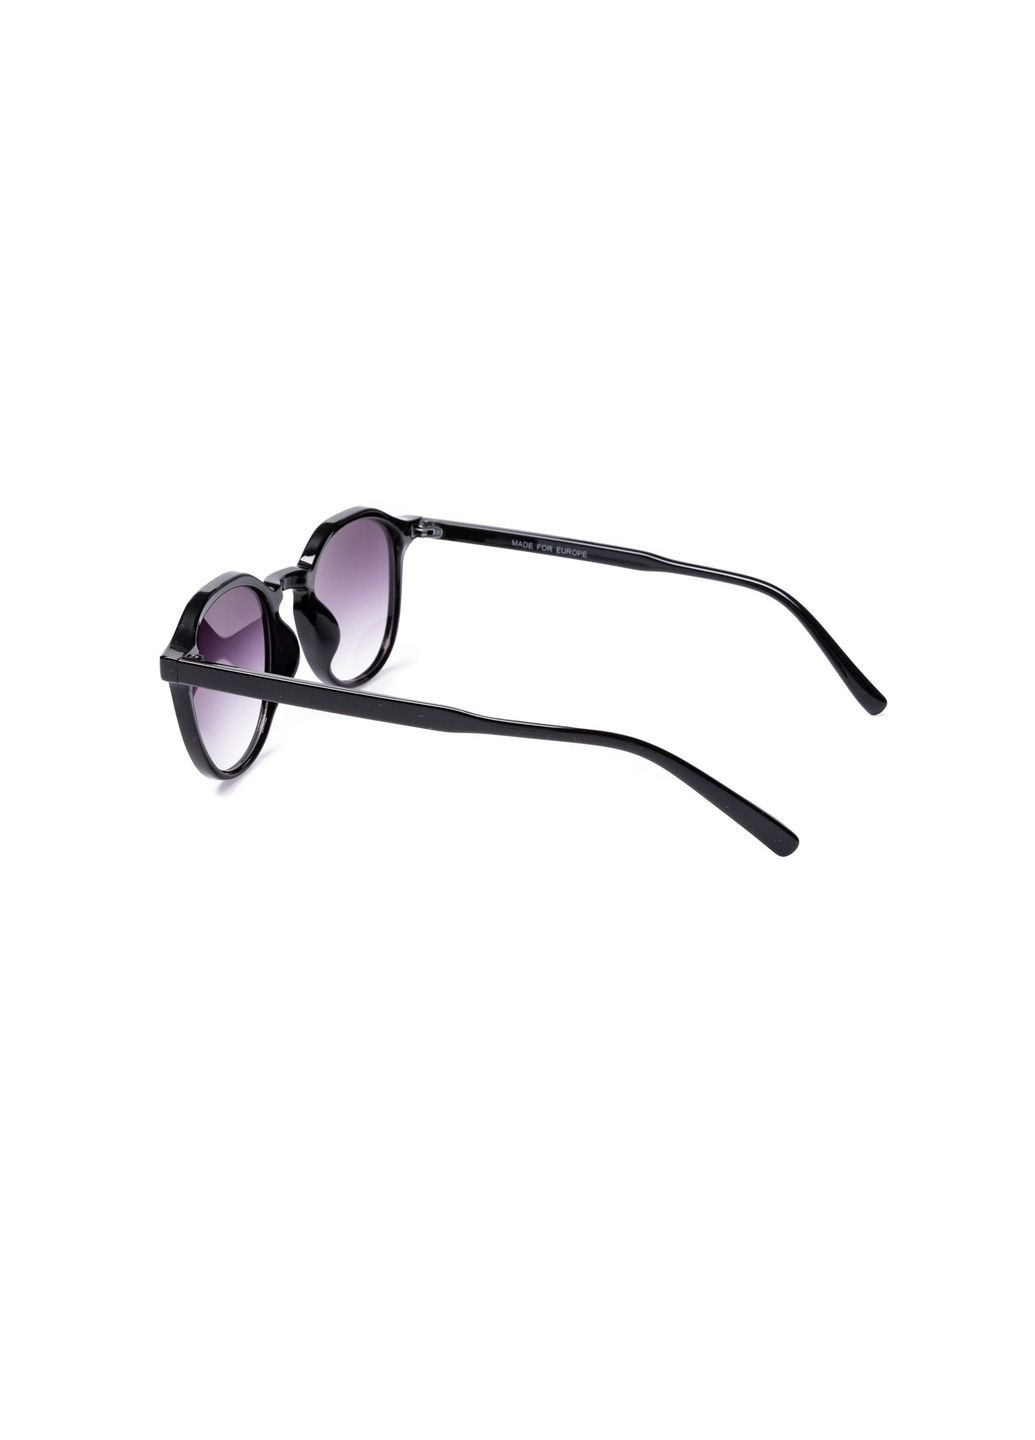 Сонцезахисні окуляри Панто чоловіі 850-188 LuckyLOOK 850-188м (292144670)